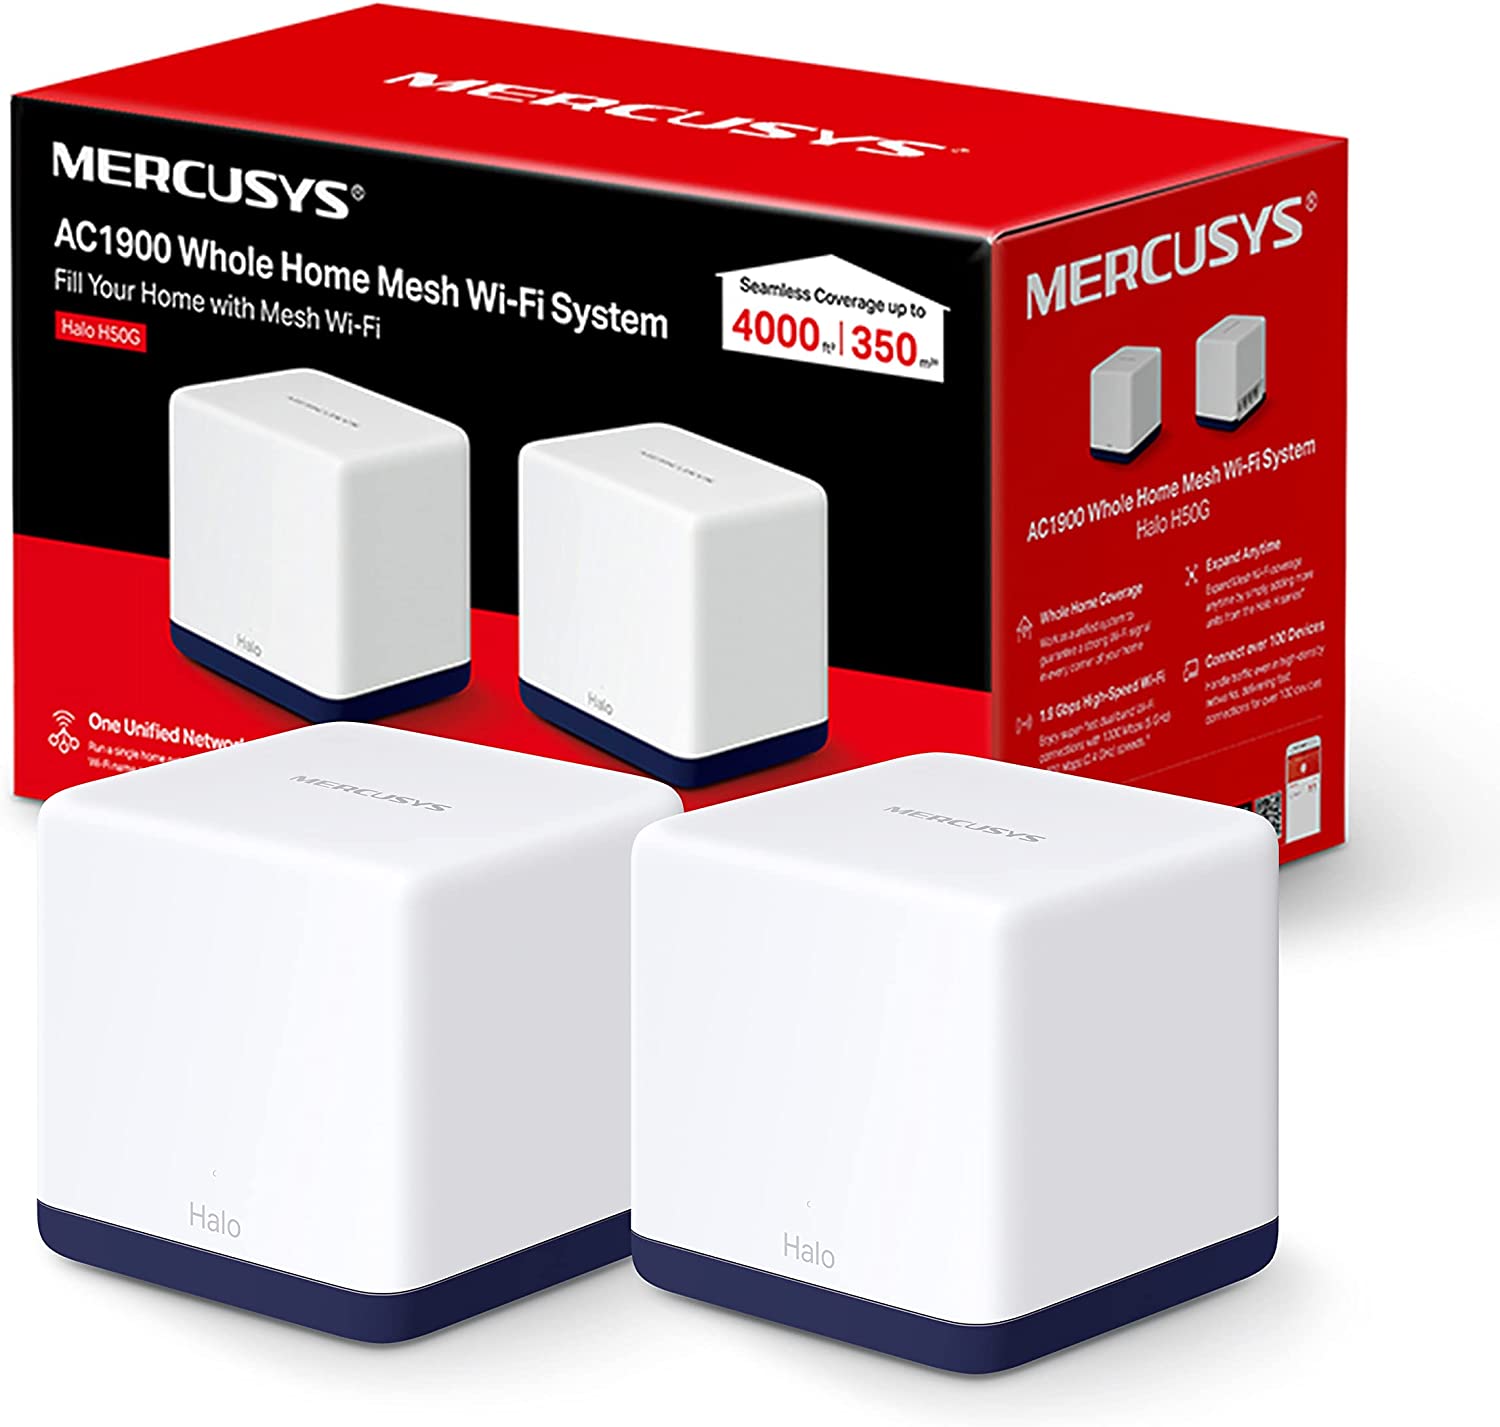 Système Wi-Fi maillé Mercusys H50G AC1900 - 2 unités Halo - Couverture jusqu'à 350 m² - Itinérance transparente